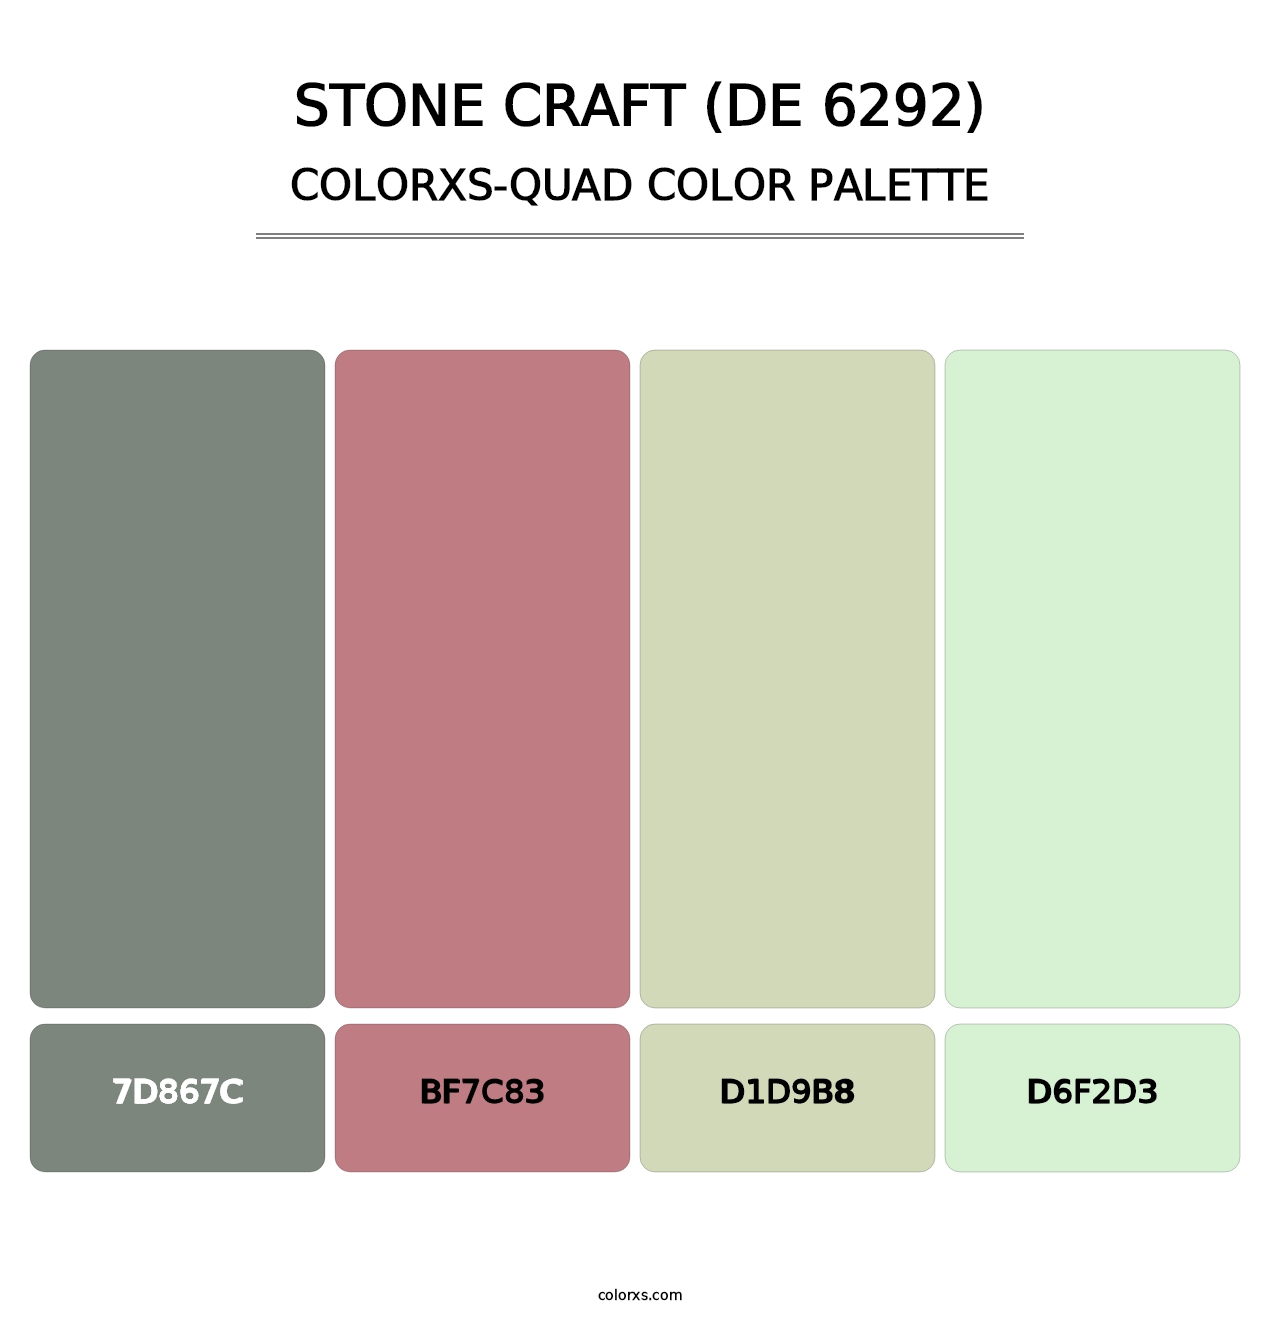 Stone Craft (DE 6292) - Colorxs Quad Palette